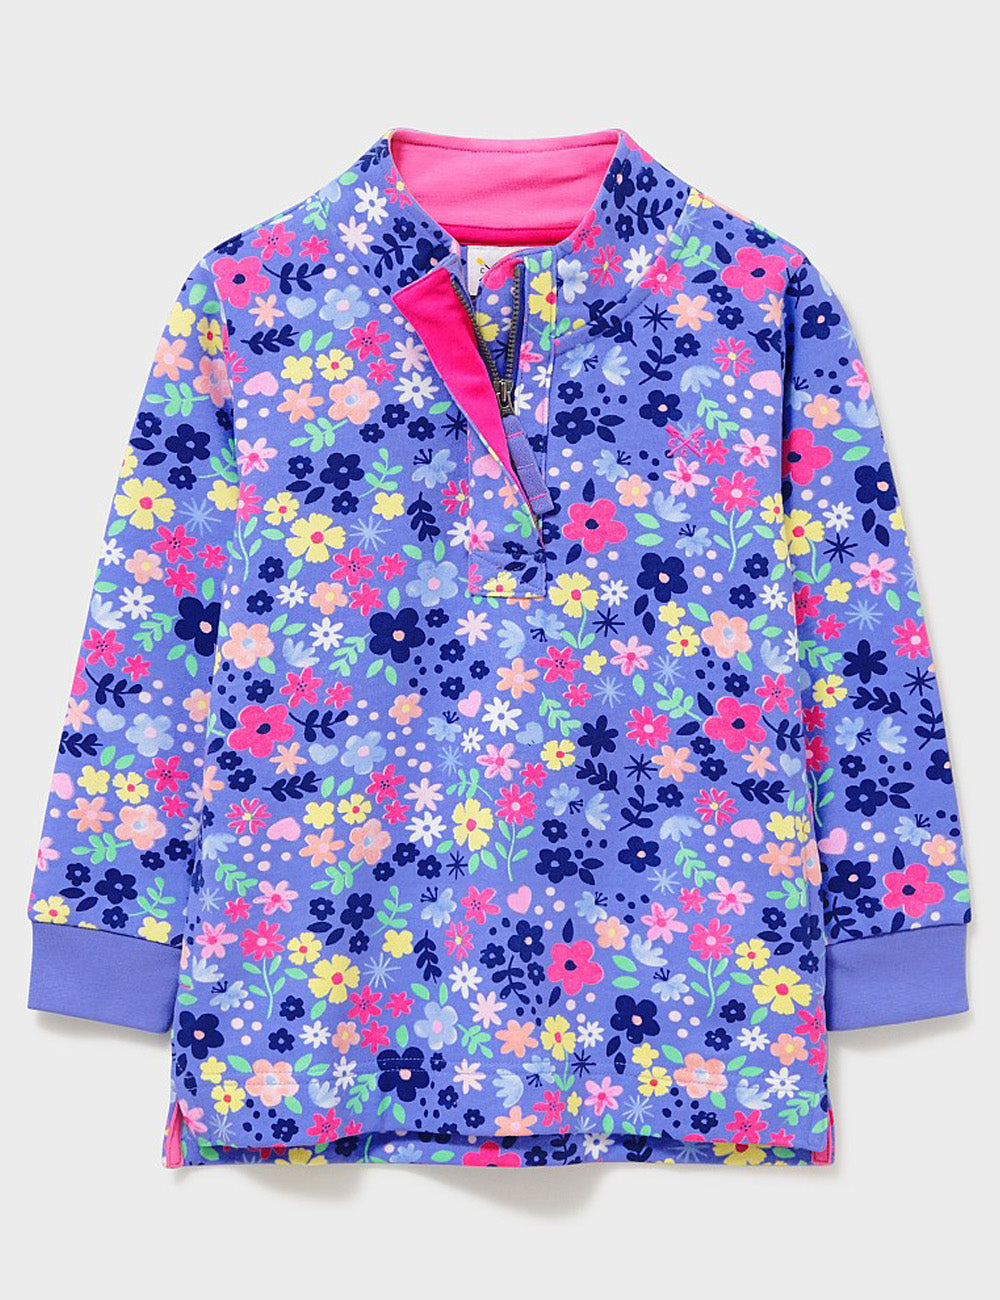 Crew Clothing Floral Print 1/2 Zip Sweatshirt - Blue Multi